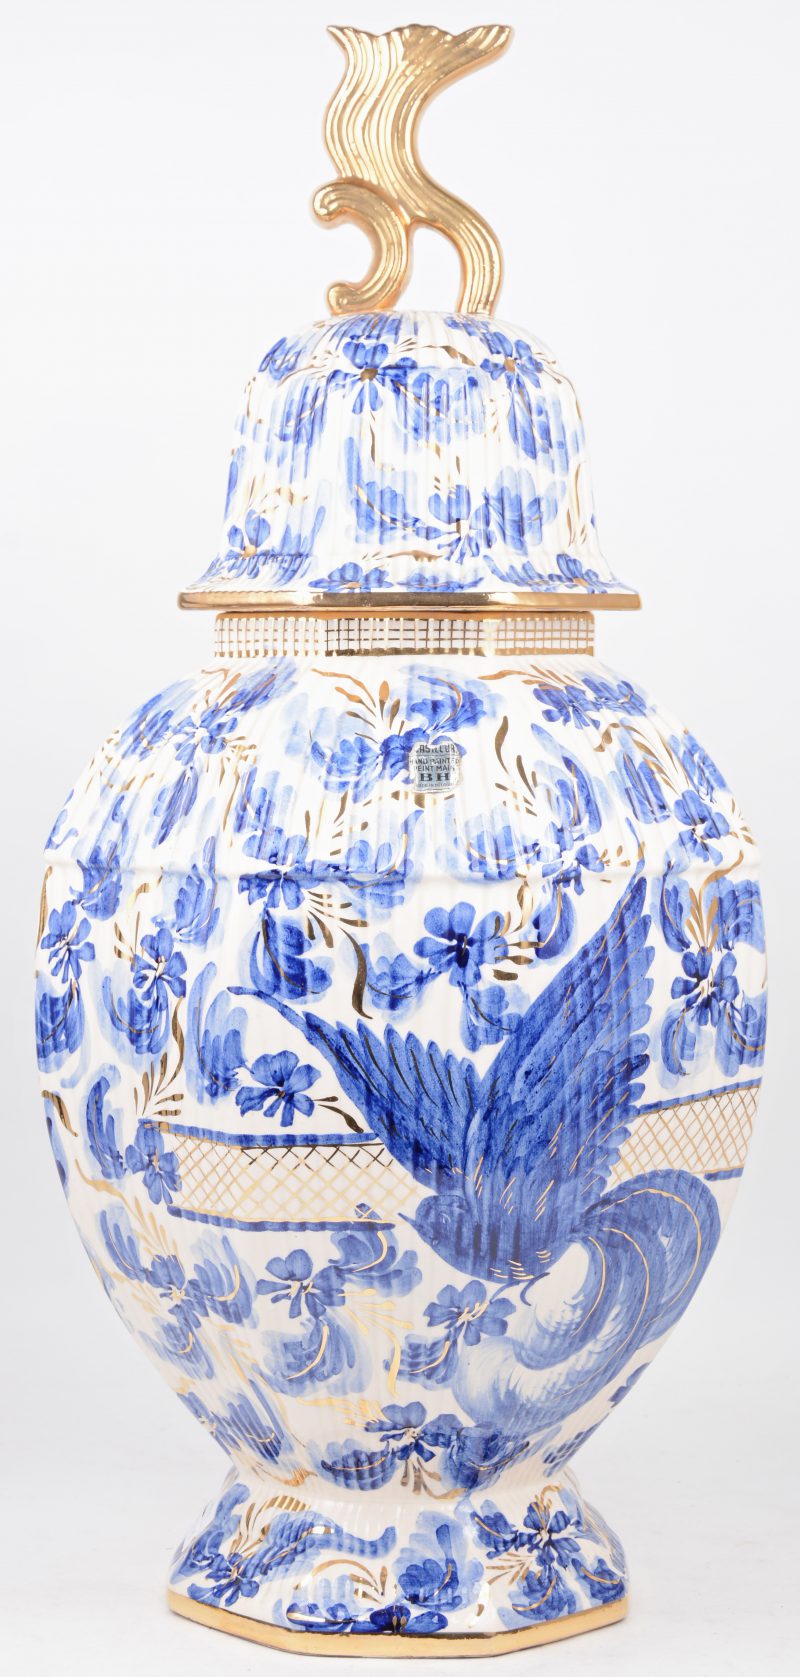 Een achthoekige dekselvaas van aardewerk met een blauw-wit en verguld bloemendecor. Schilfer aan het deksel.